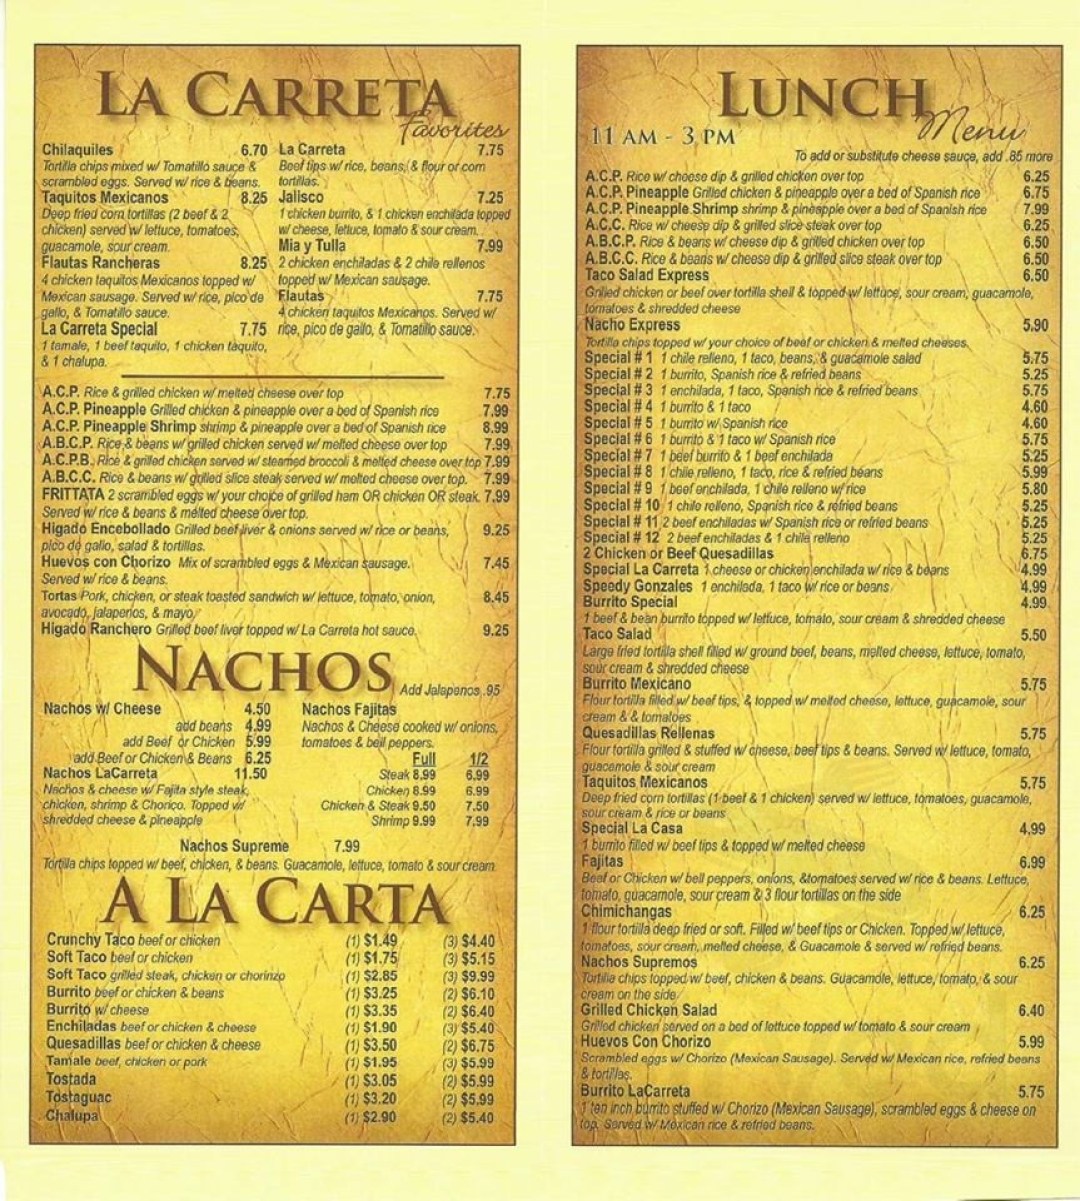 Picture of: La Carreta Mexican Restaurant menu in Newport, Tennessee, USA